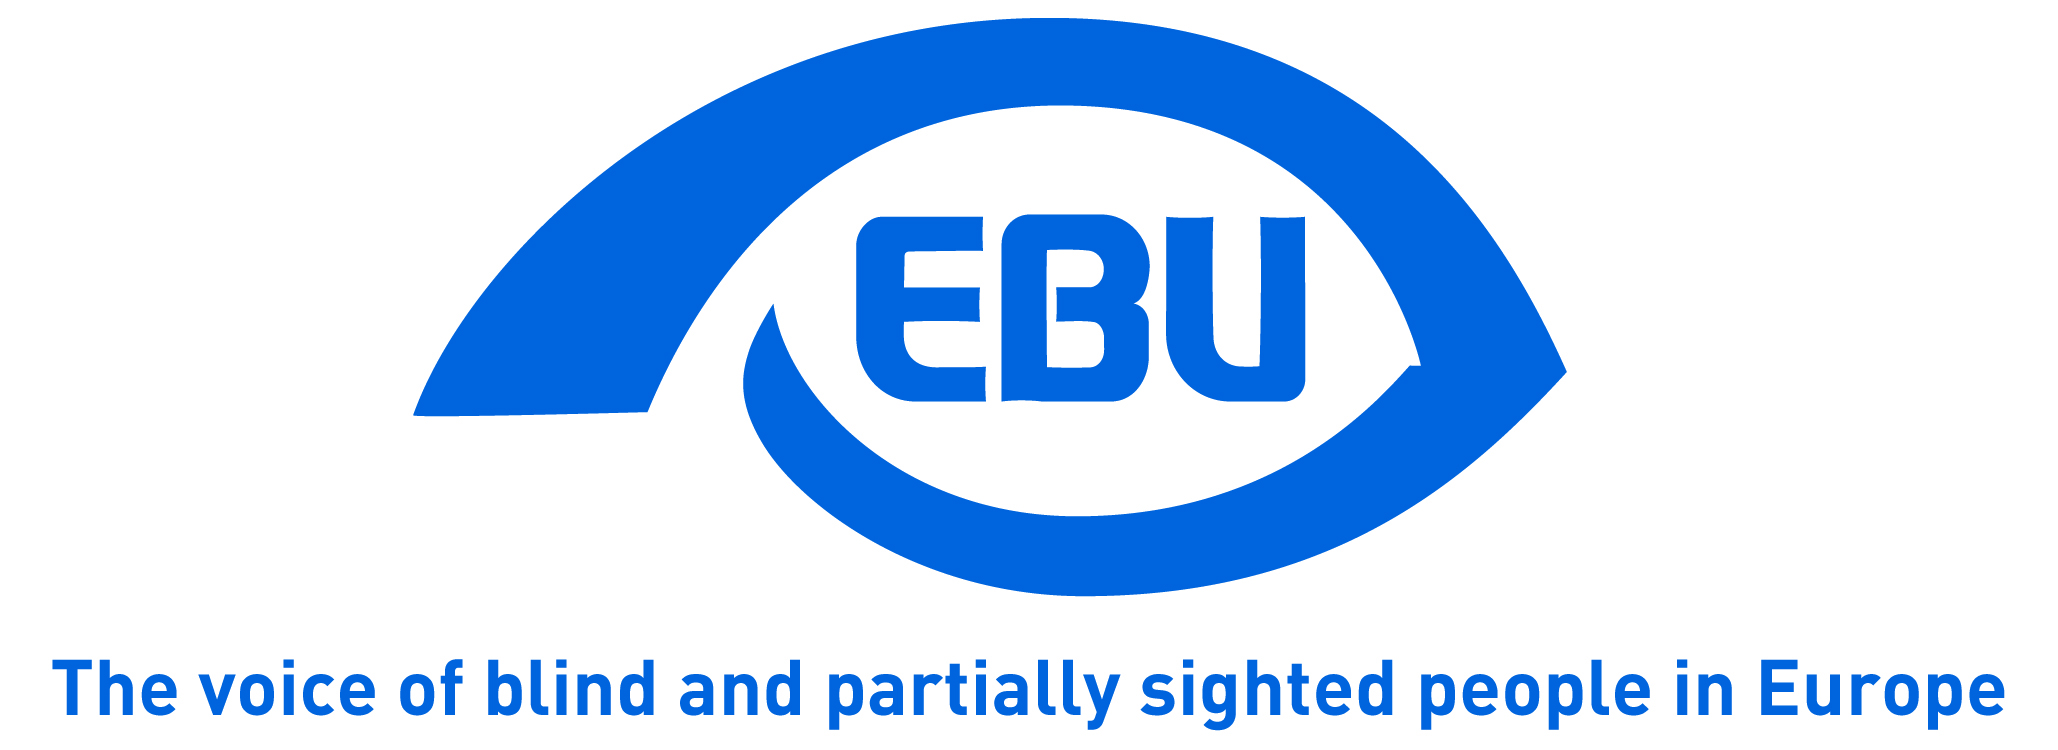 logo european blind union with strapline 